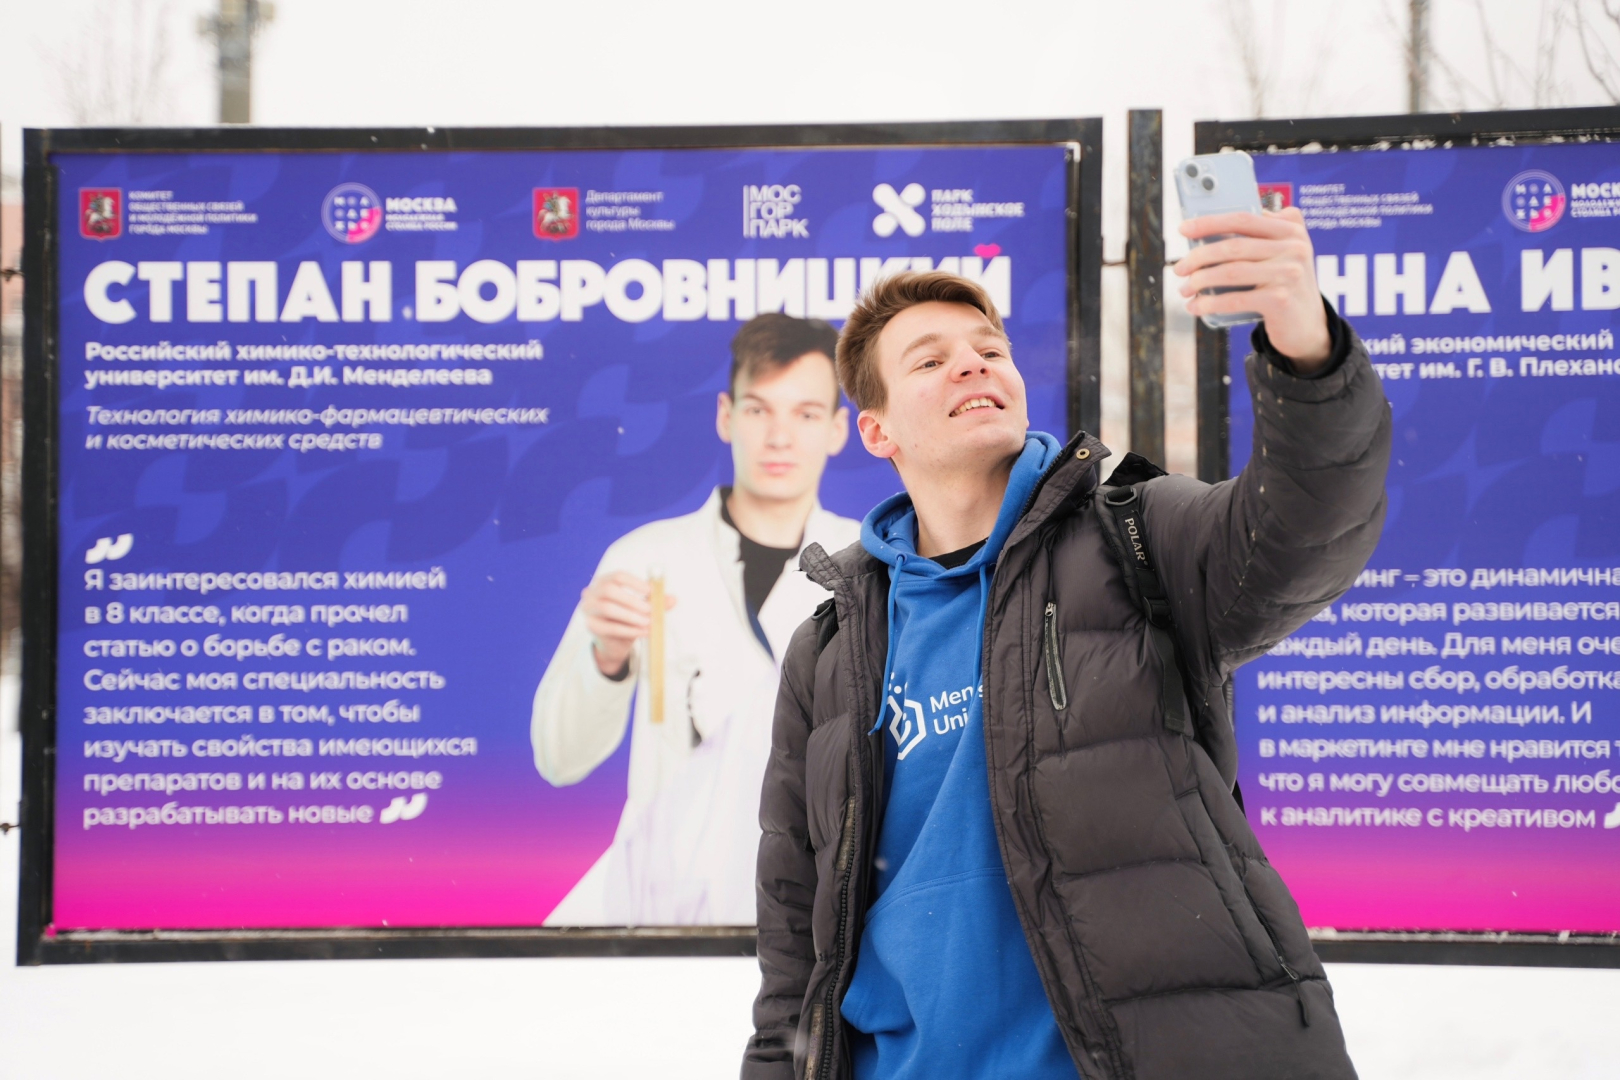 Лицо российского студенчества: фото менделеевца украшает выставку под открытым небом Москвы